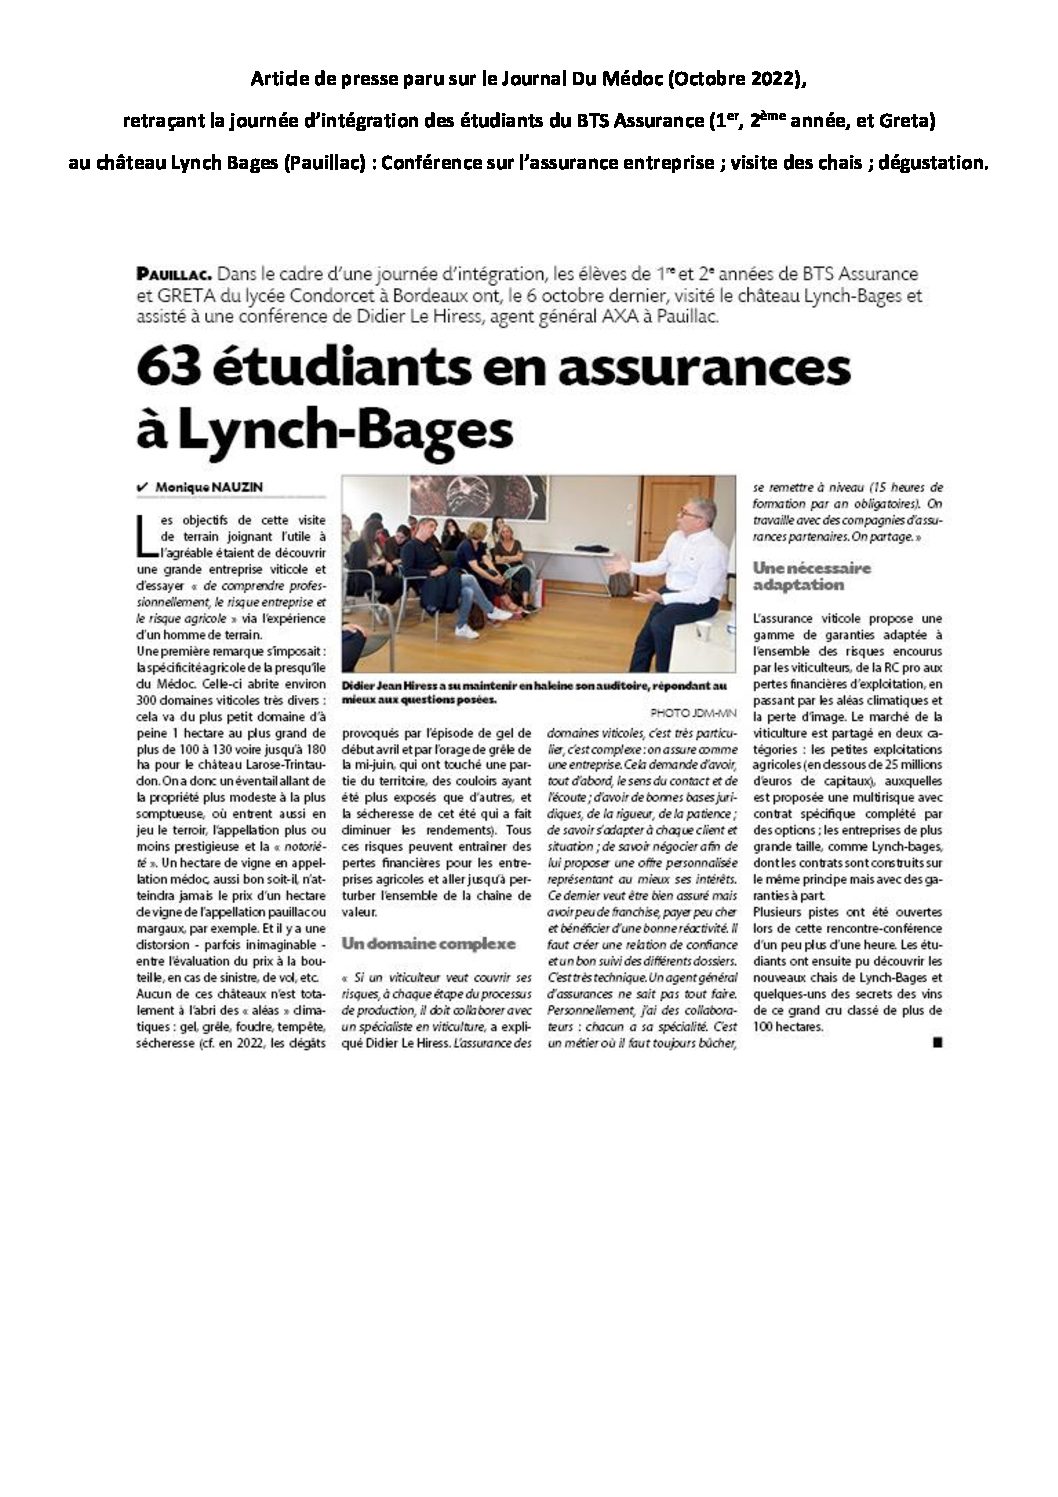 Article de presse paru dans le Journal Du Médoc (Octobre 2022) retraçant la journée d’intégration des étudiants du BTS Assurance